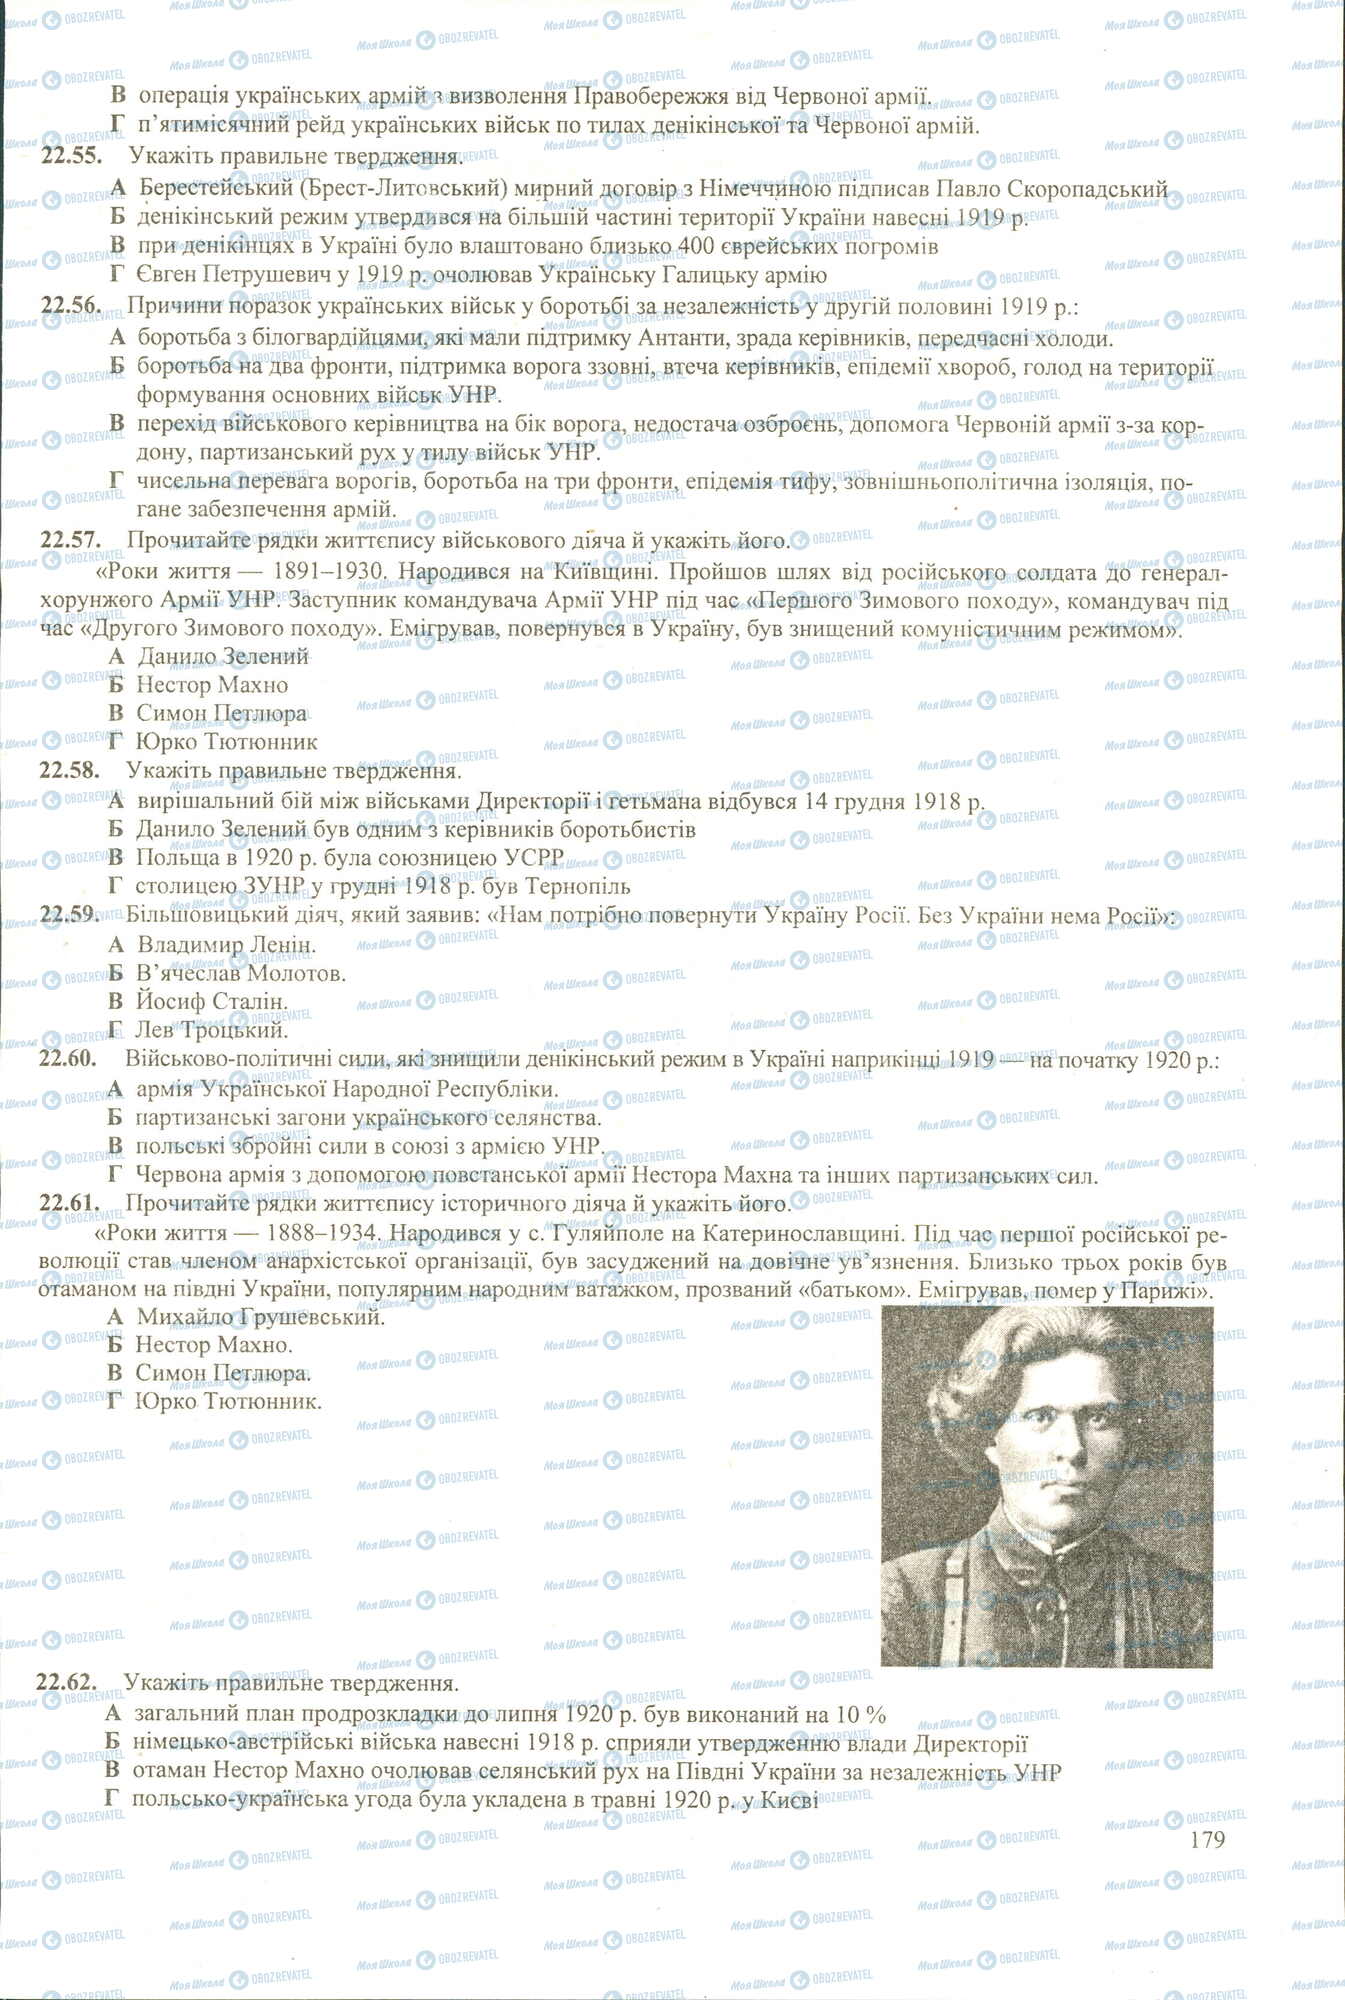 ЗНО История Украины 11 класс страница 55-62